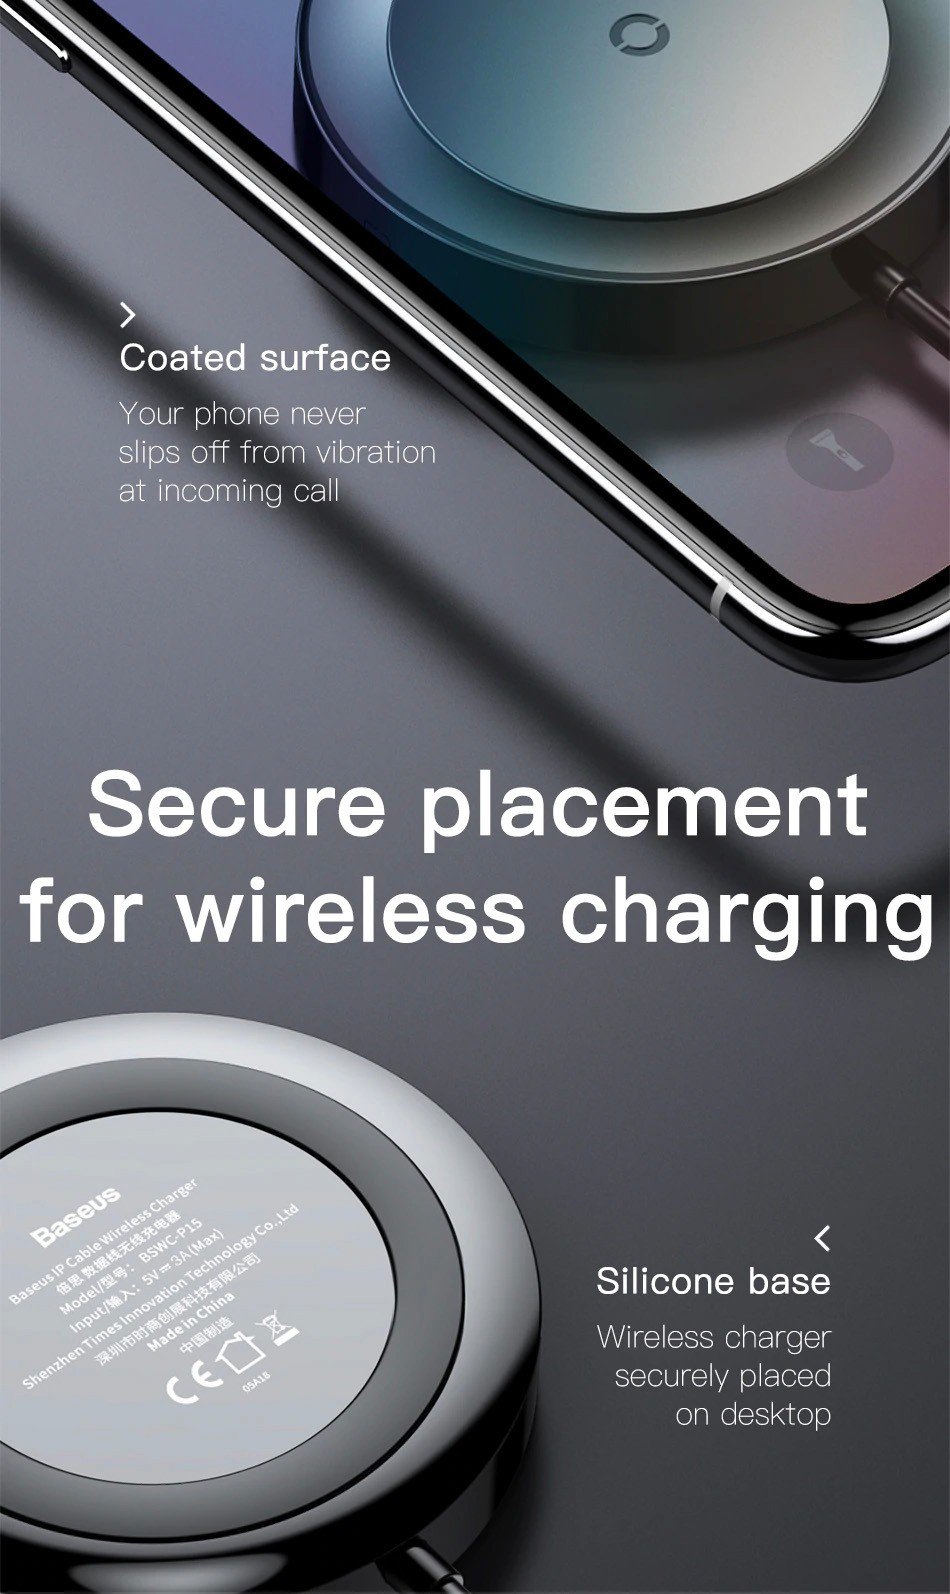 Cáp sạc tích hợp sạc không dây Baseus Wireless Charge Lightning Cable cho iPhone 8/ iPX/ XS/ RX / iP XS Max, Samsung S9/N9 (2.4A, 1.2m,5W Wireless Charger)